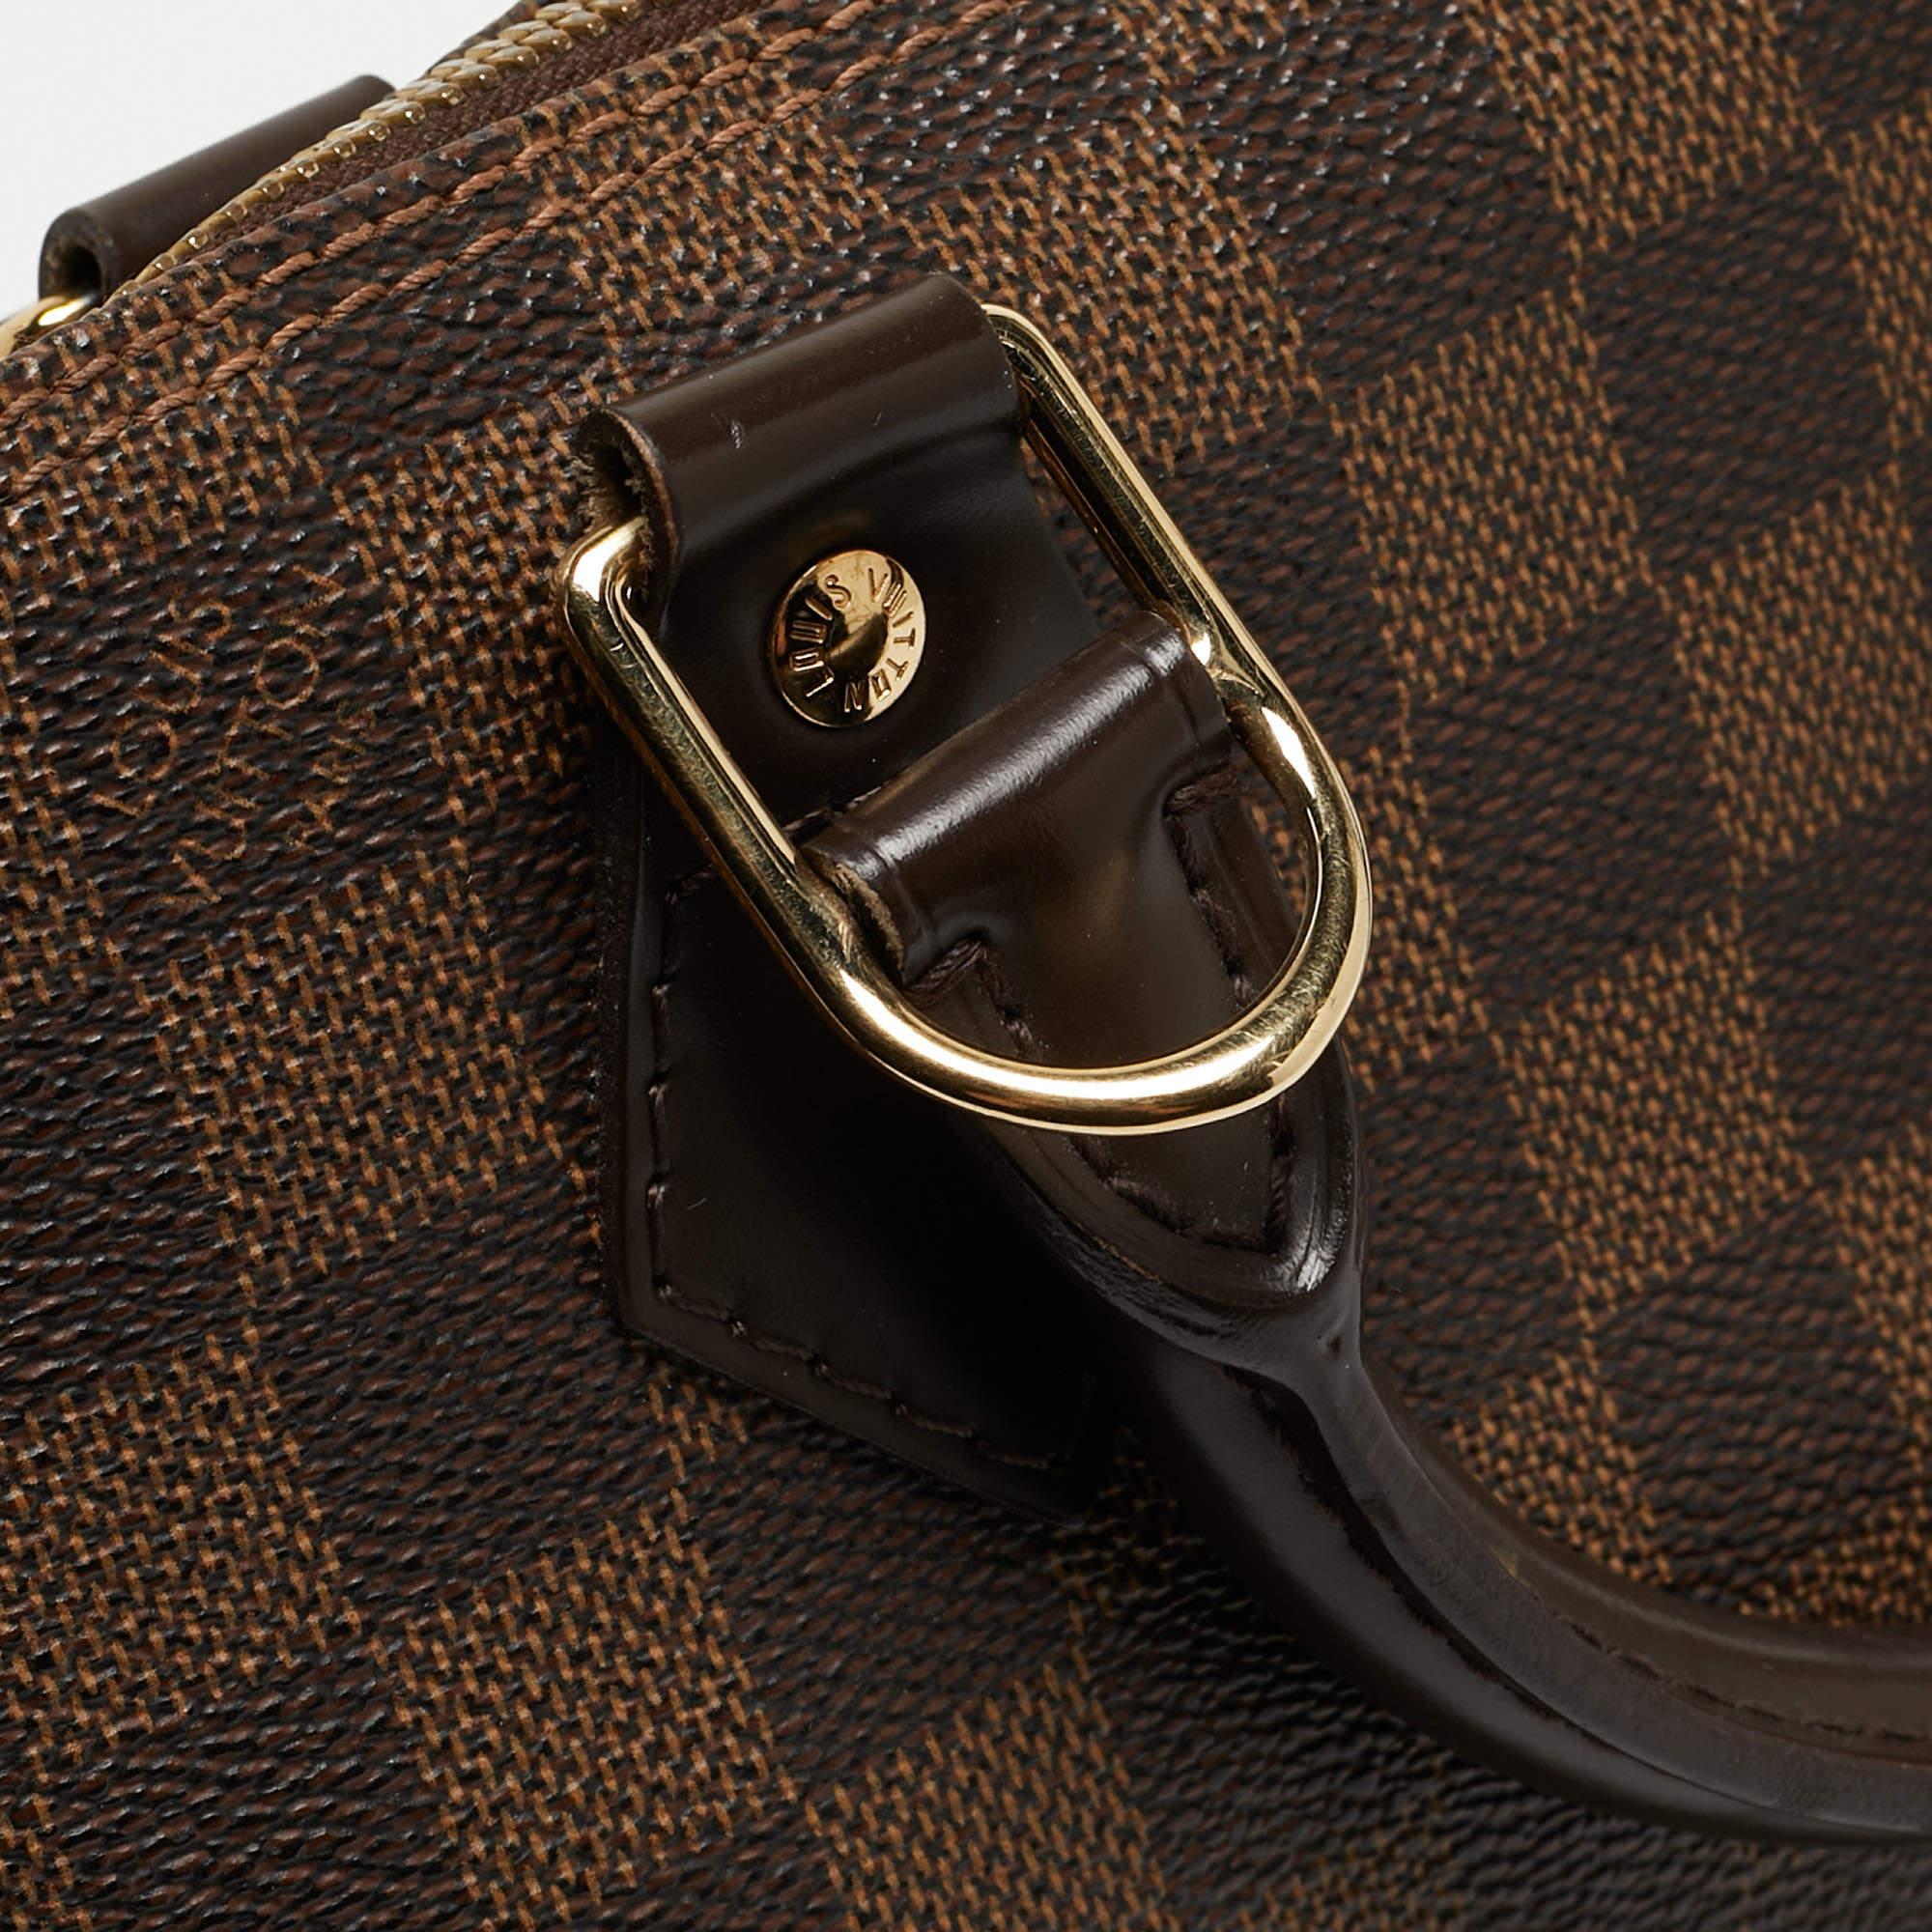 Louis Vuitton Damier Ebene Canvas Alma PM Bag For Sale 16